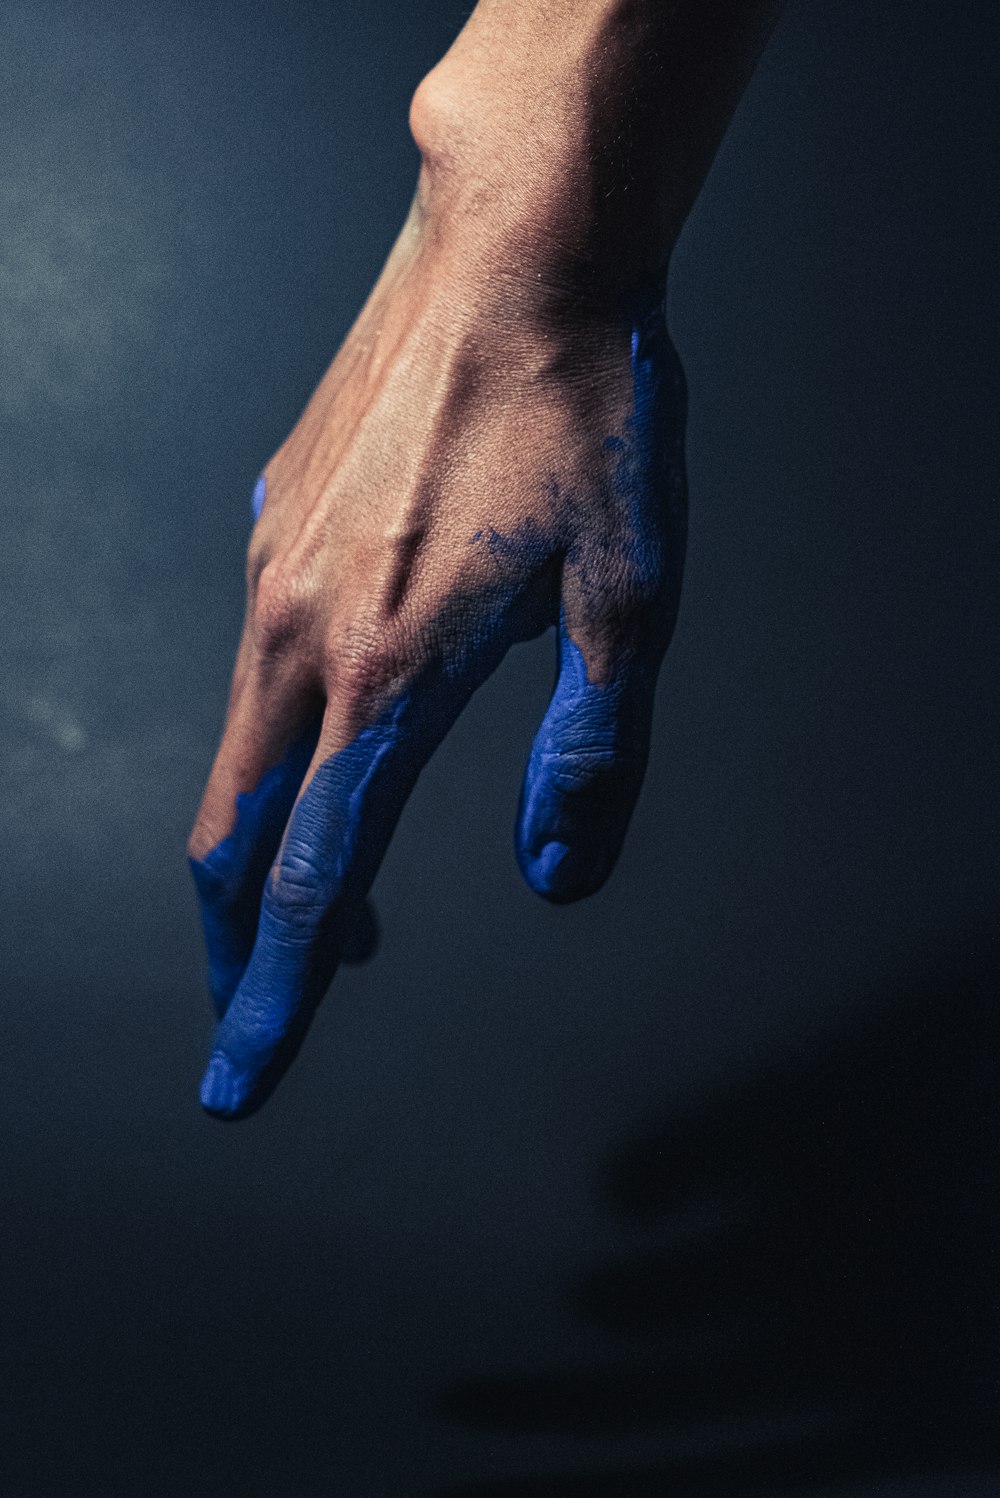 Mano izquierda de las personas con esmalte de uñas azul